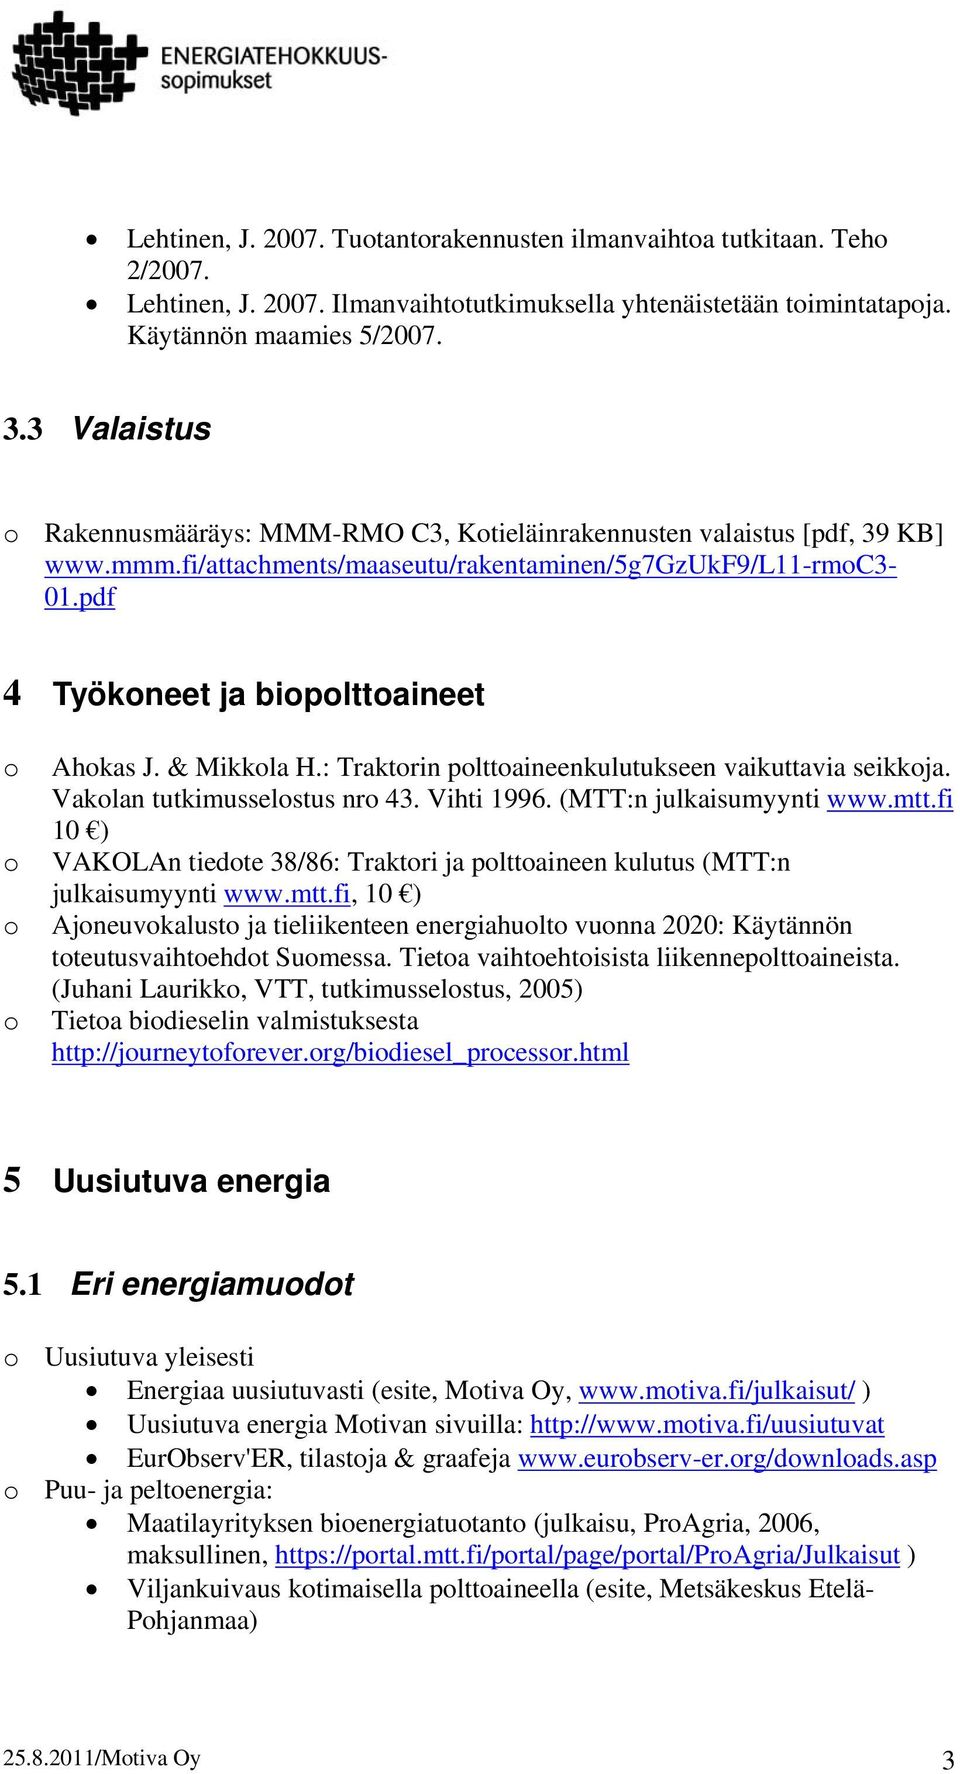 & Mikkla H.: Traktrin plttaineenkulutukseen vaikuttavia seikkja. Vaklan tutkimusselstus nr 43. Vihti 1996. (MTT:n julkaisumyynti www.mtt.